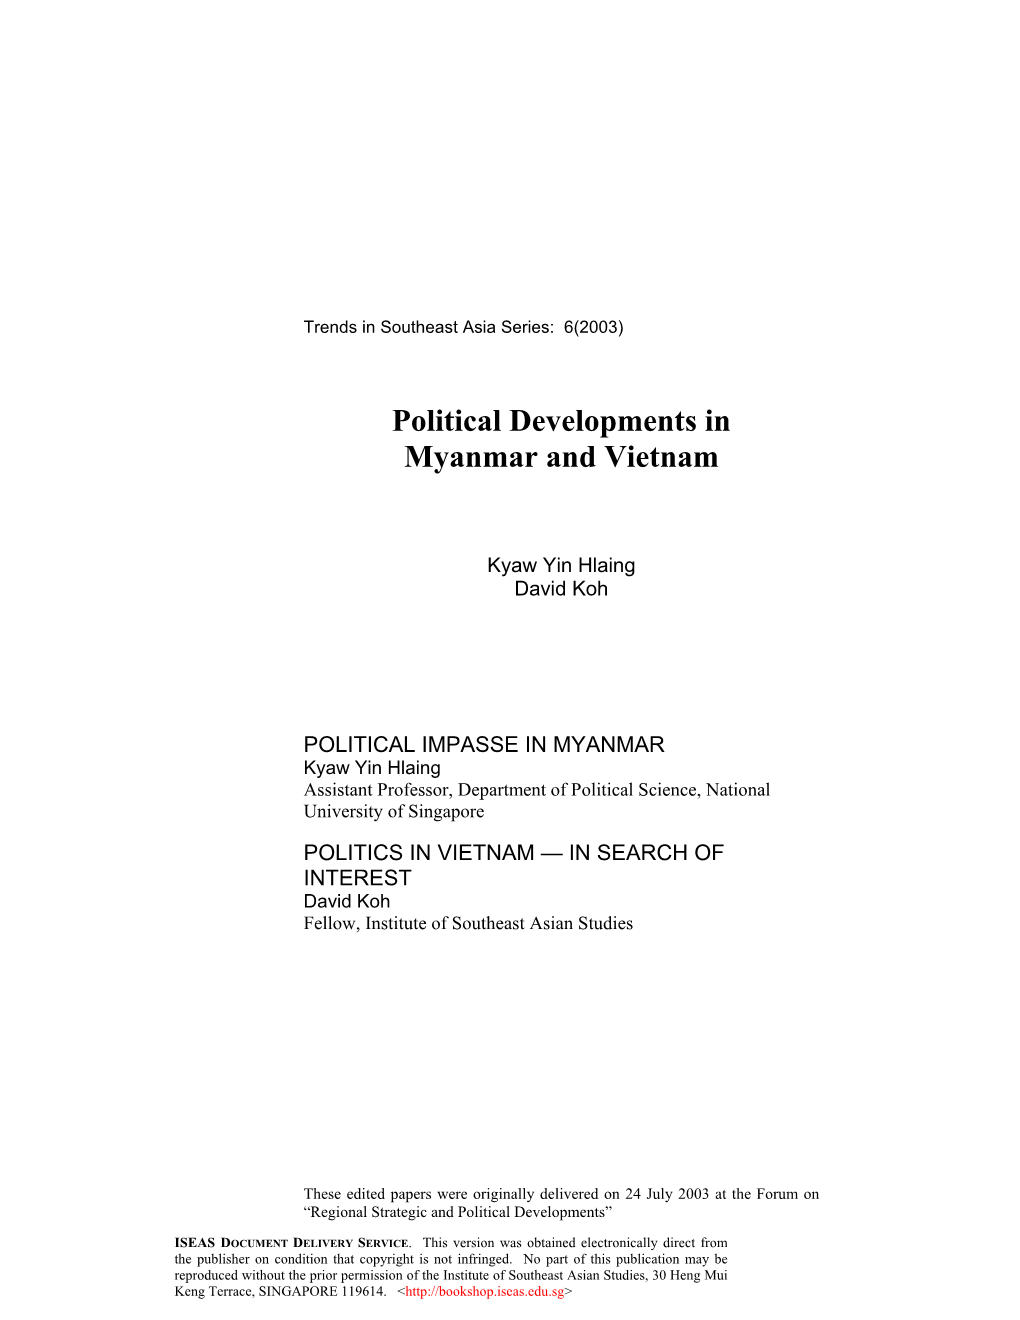 Political Developments in Myanmar and Vietnam